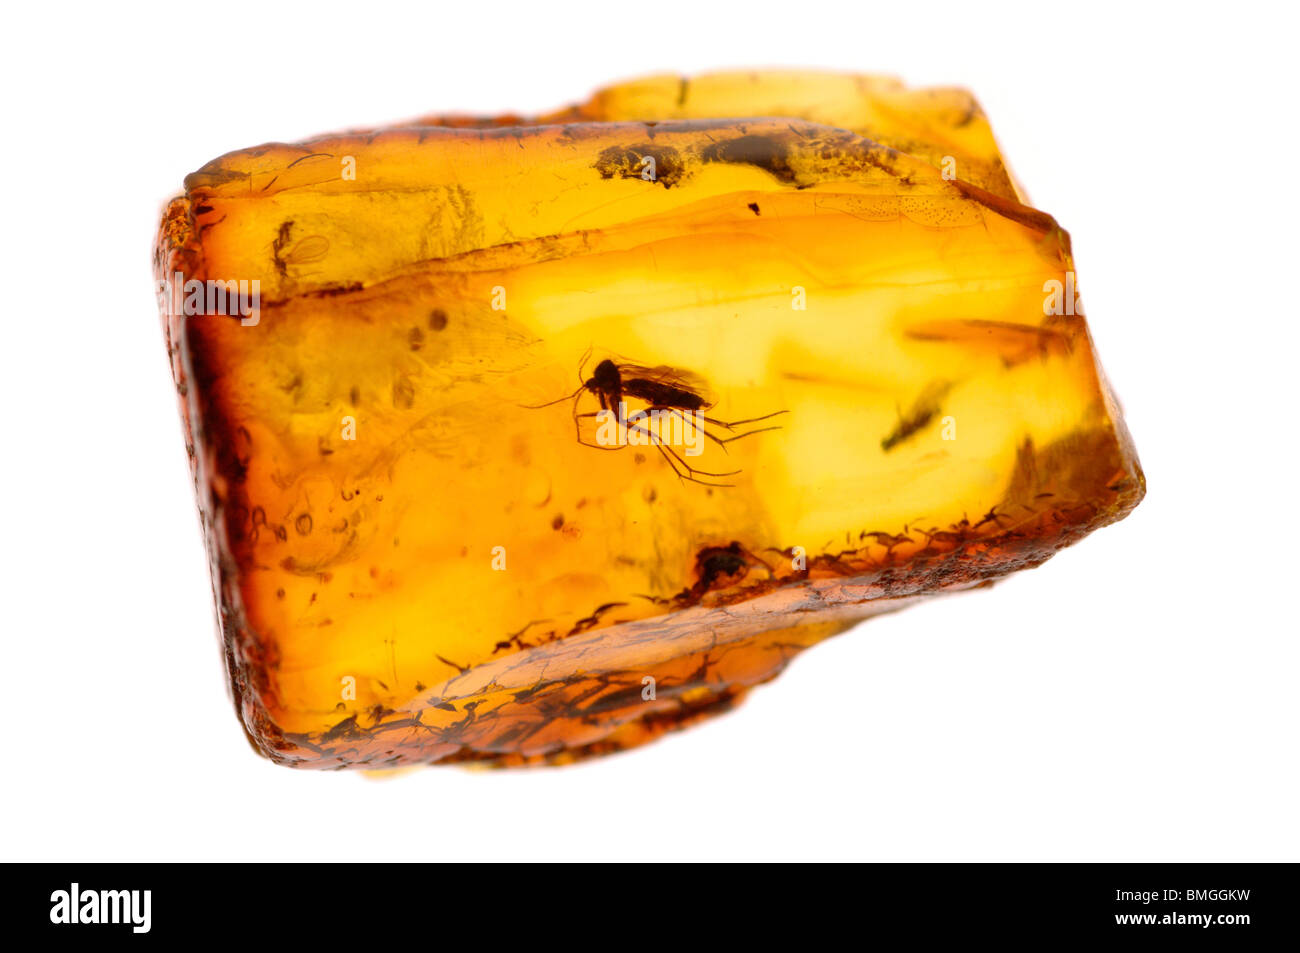 Un type de moustique insecte dans l'ambre baltique -une résine d'arbres fossilisés. Banque D'Images